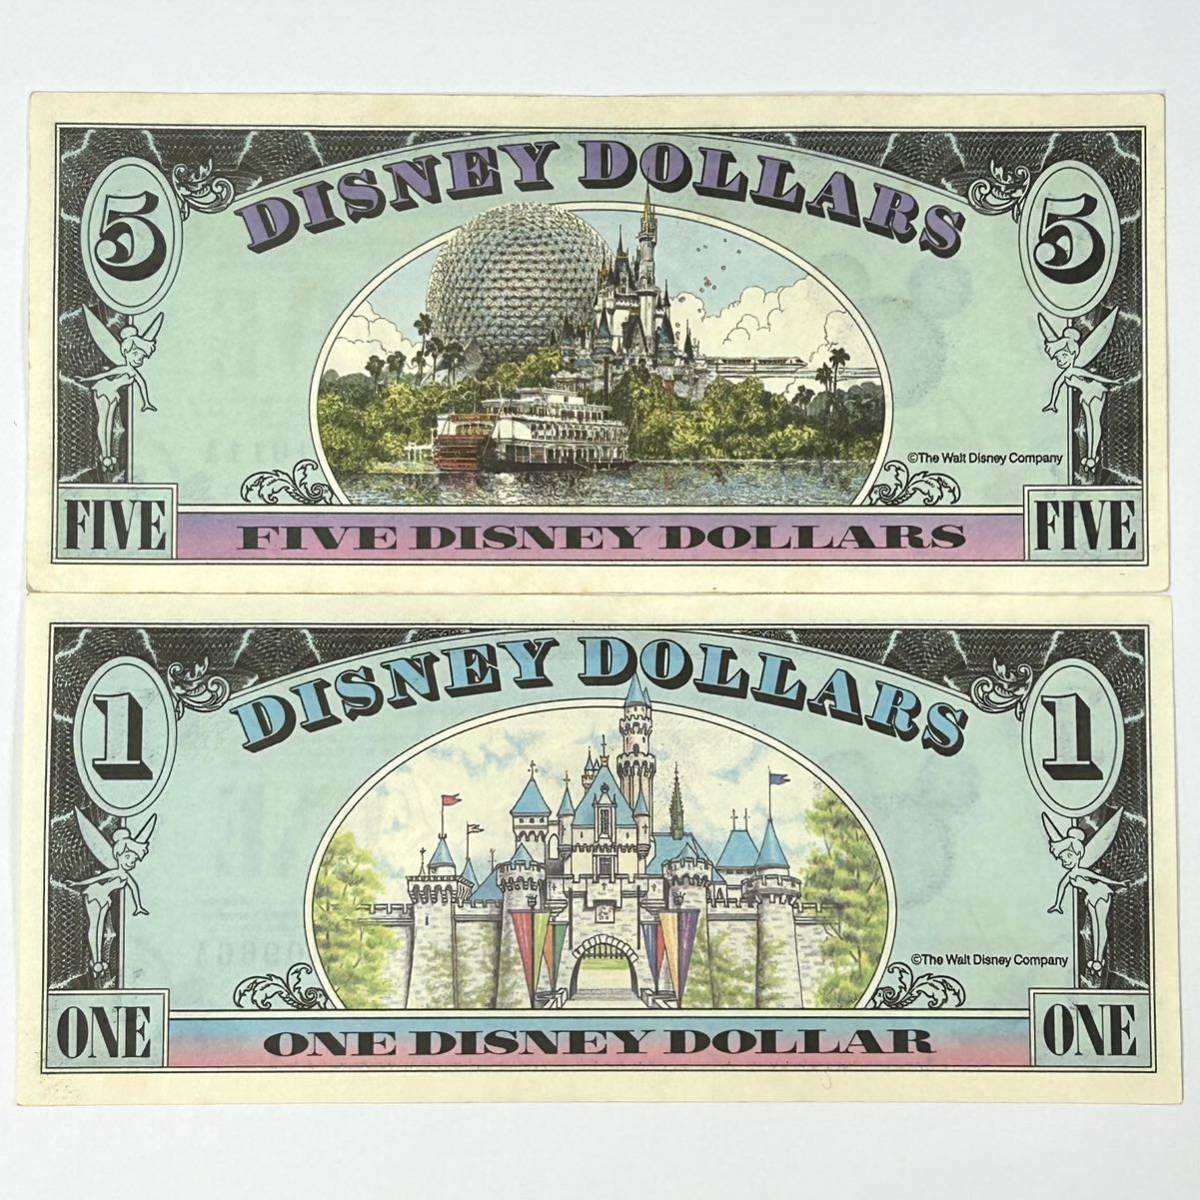 ディズニーダラー紙幣 10ドル1990年になってます。